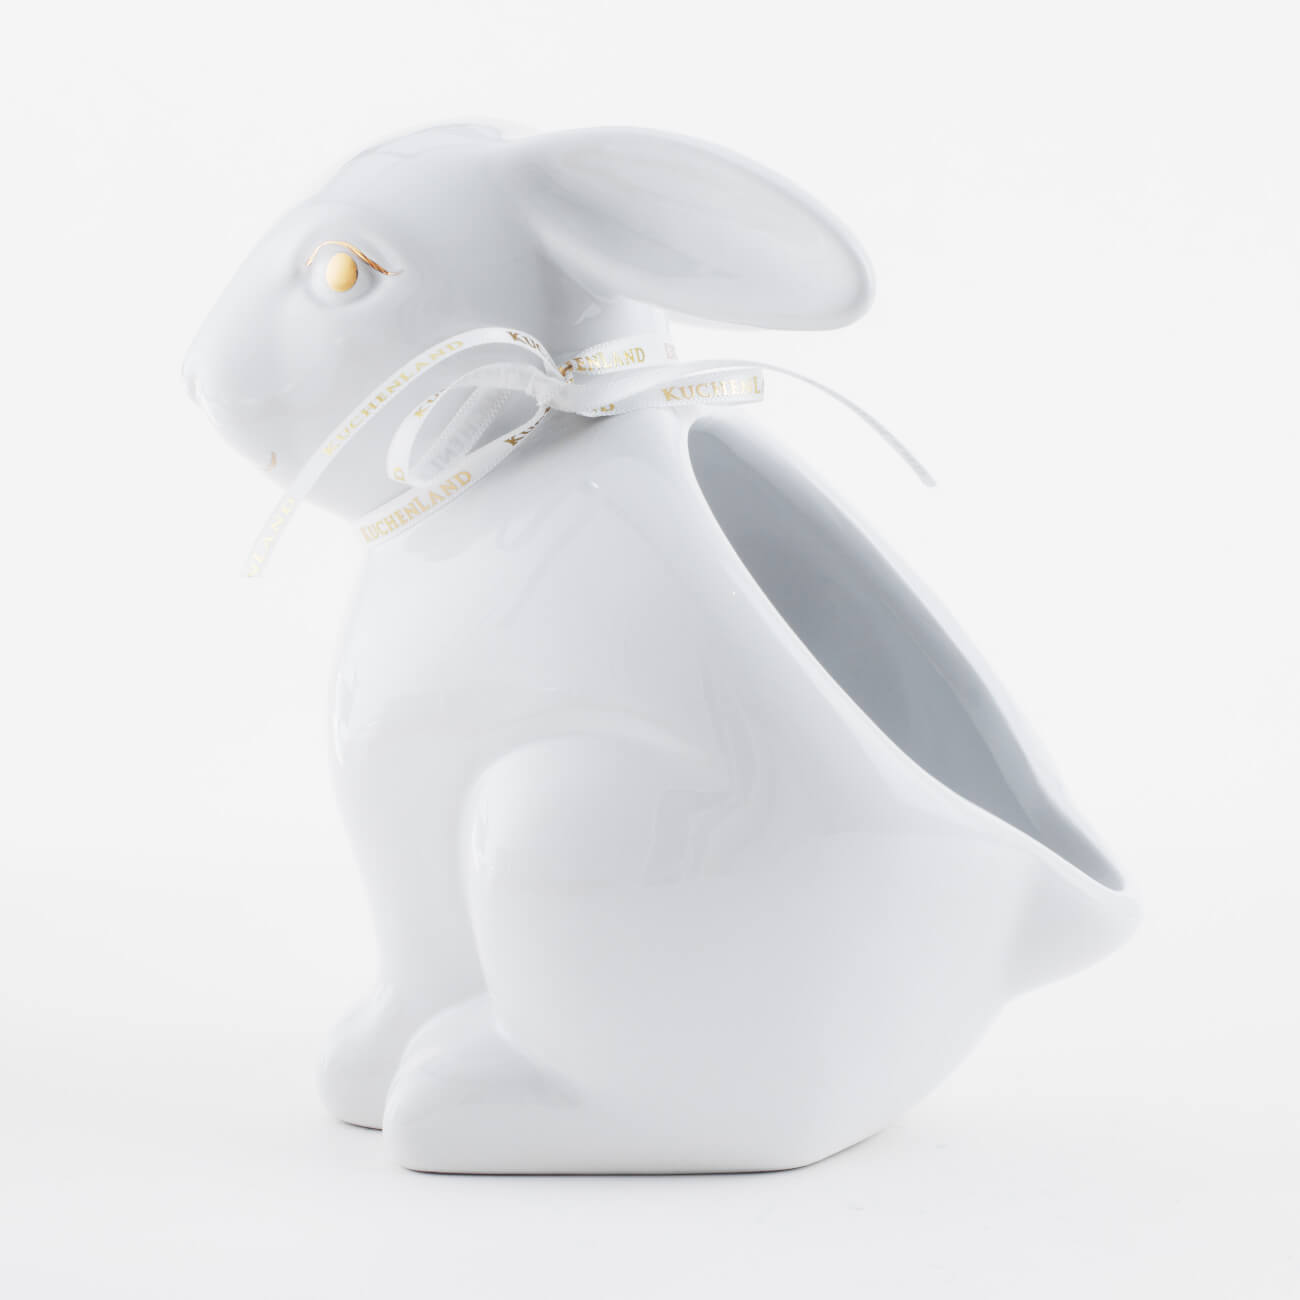 Конфетница, 17х17 см, керамика, белая, Кролик, Easter gold подставка под горячее 27x20 см керамика пробка белая яйцо кролик и цыпленок easter